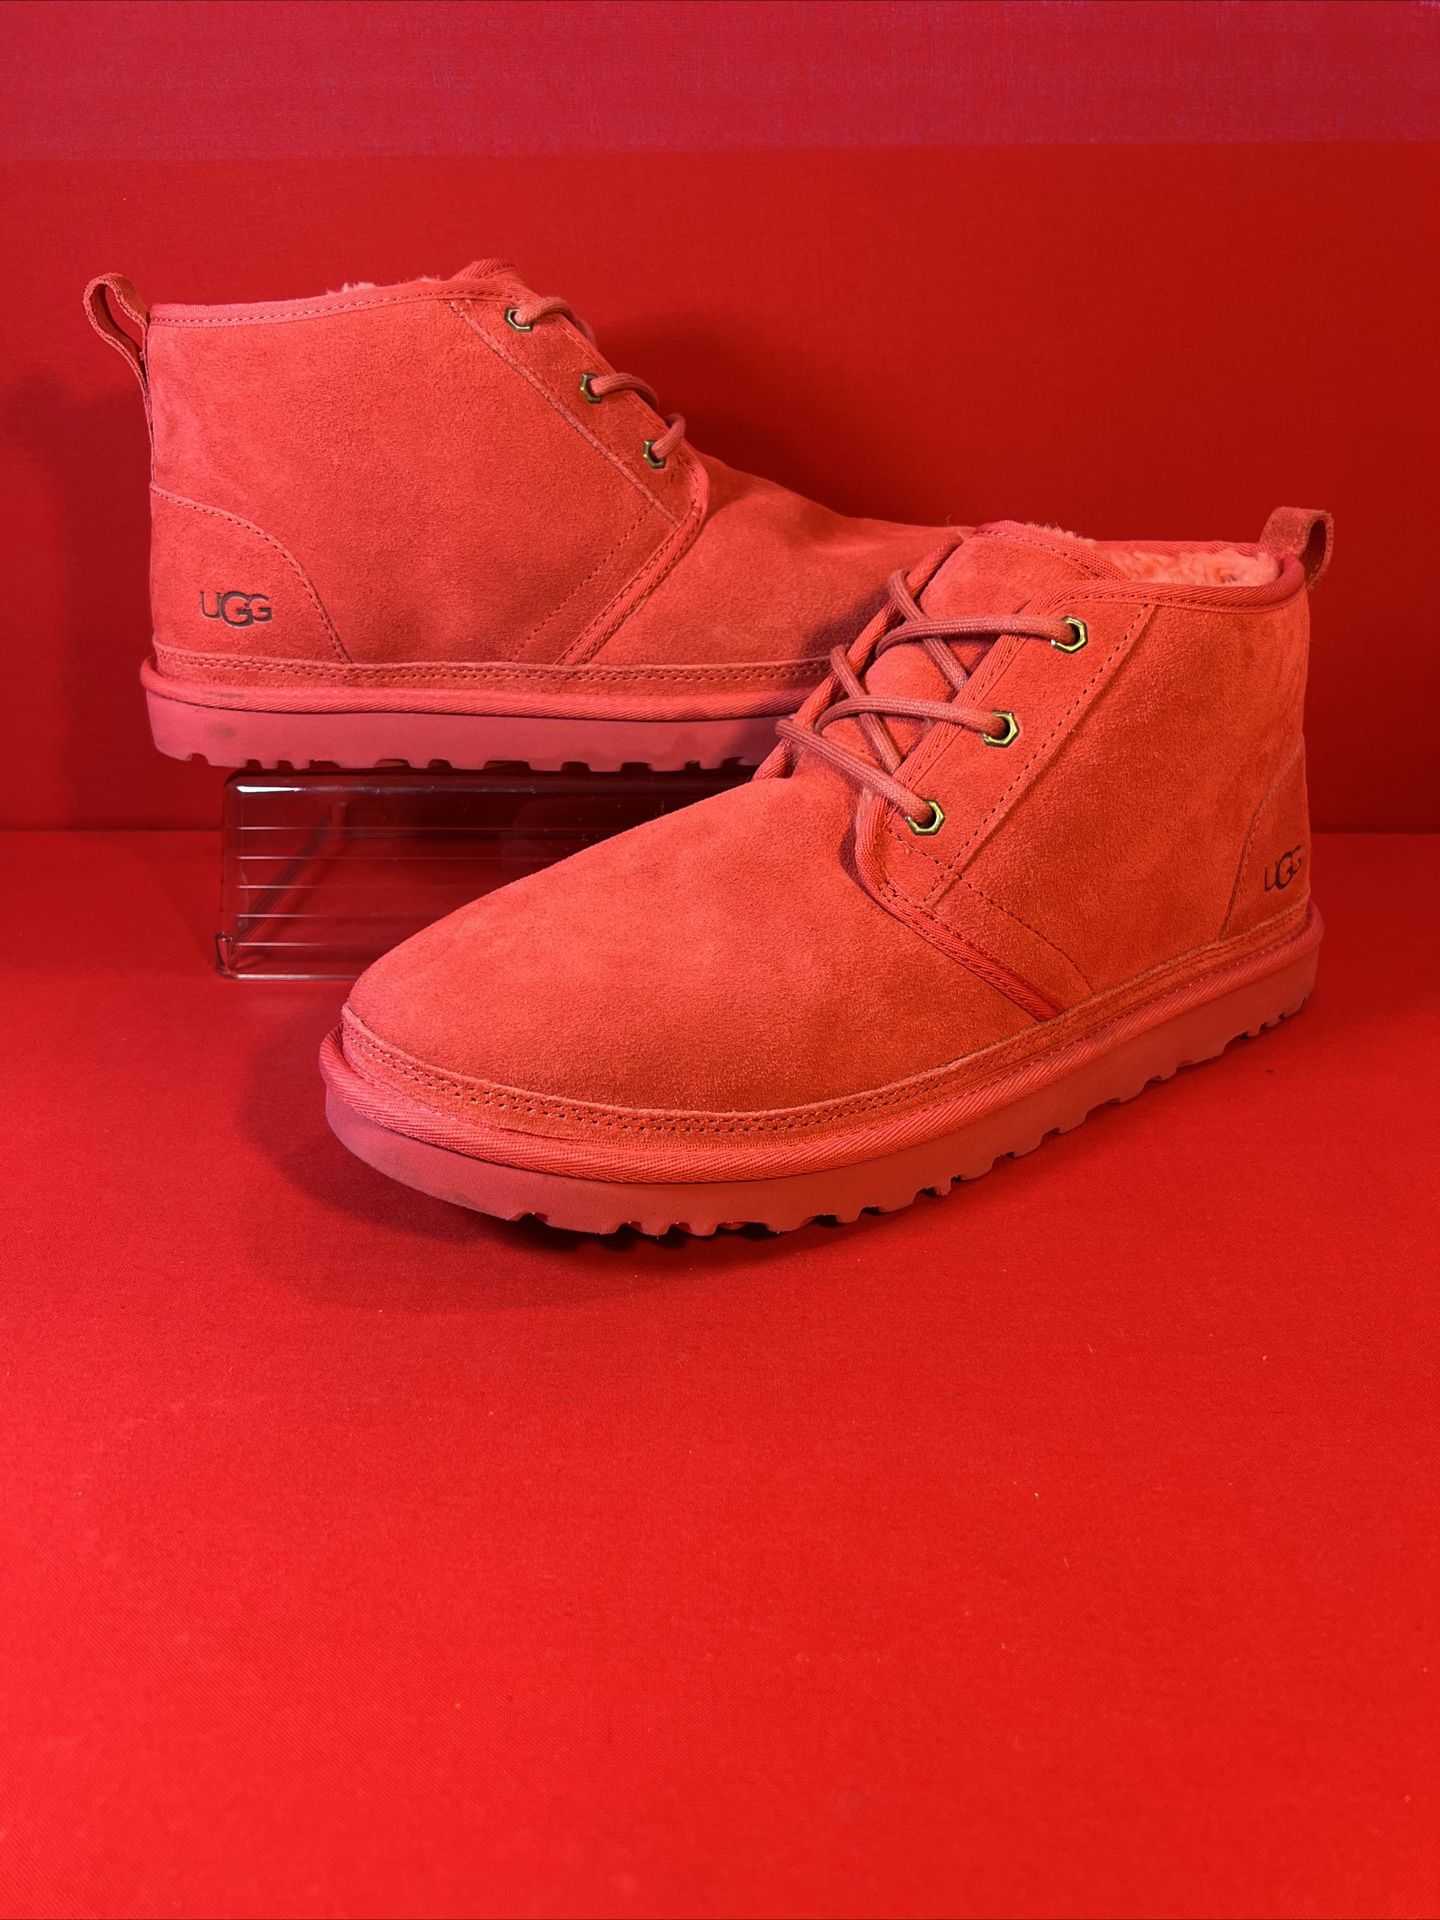 UGG Neumel Red Boot Size 13 for Men - S/N 3236